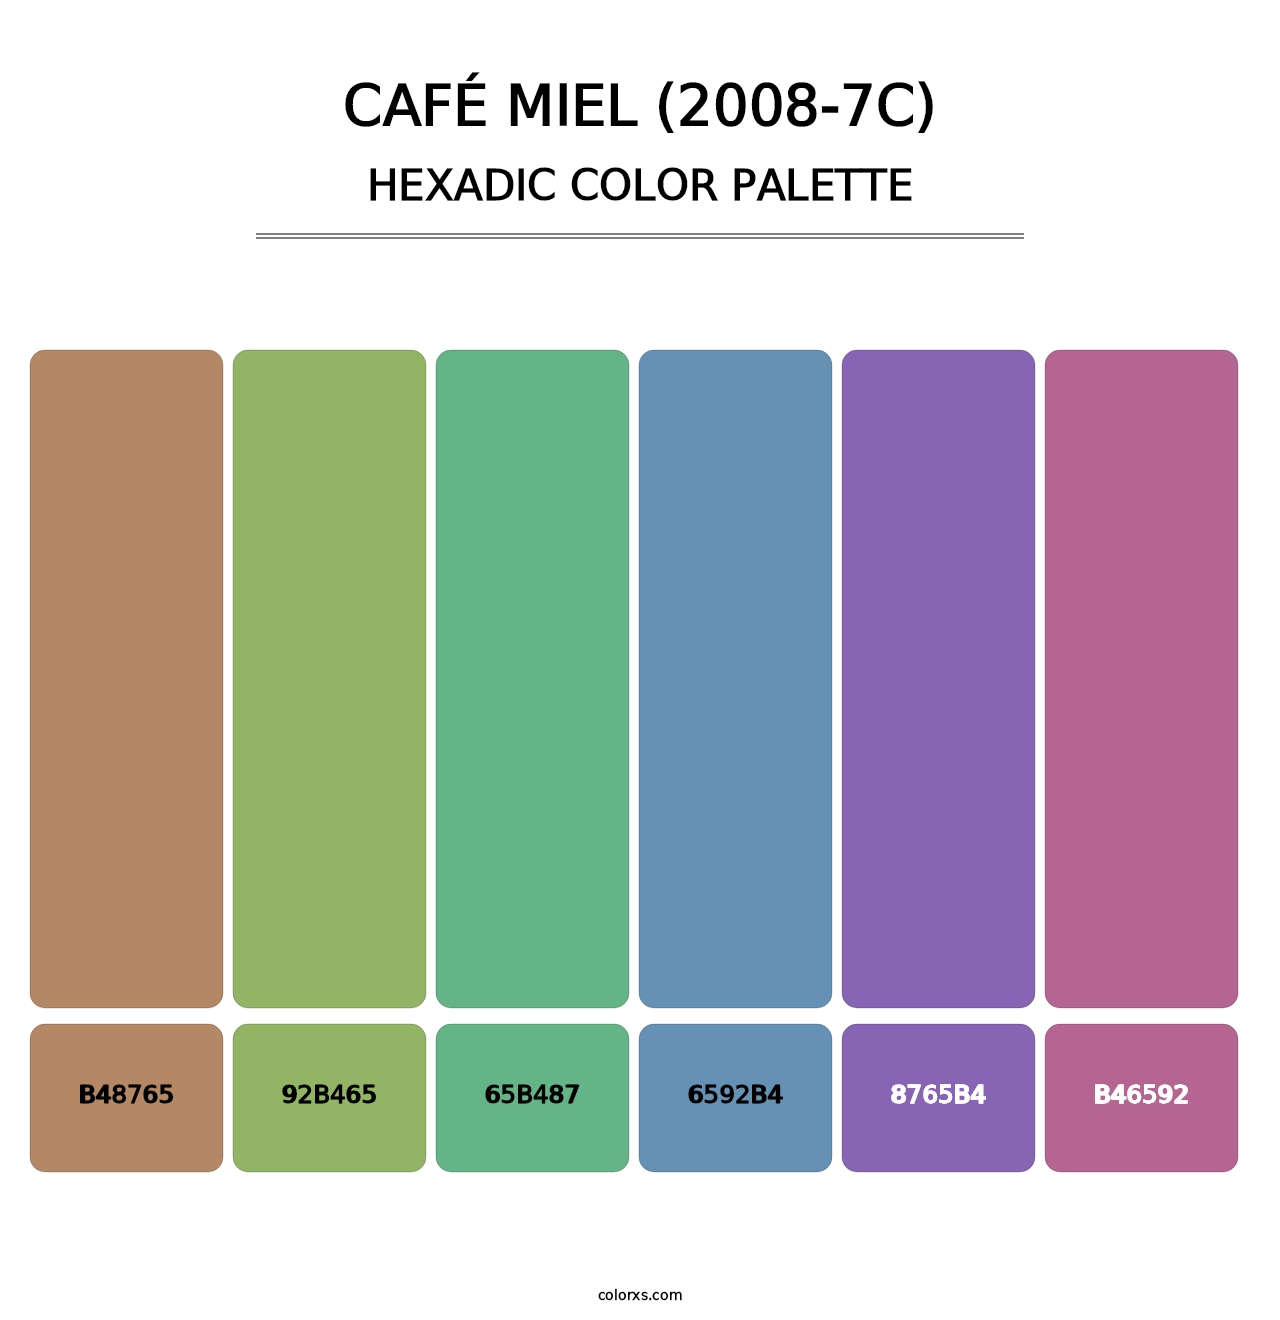 Café Miel (2008-7C) - Hexadic Color Palette